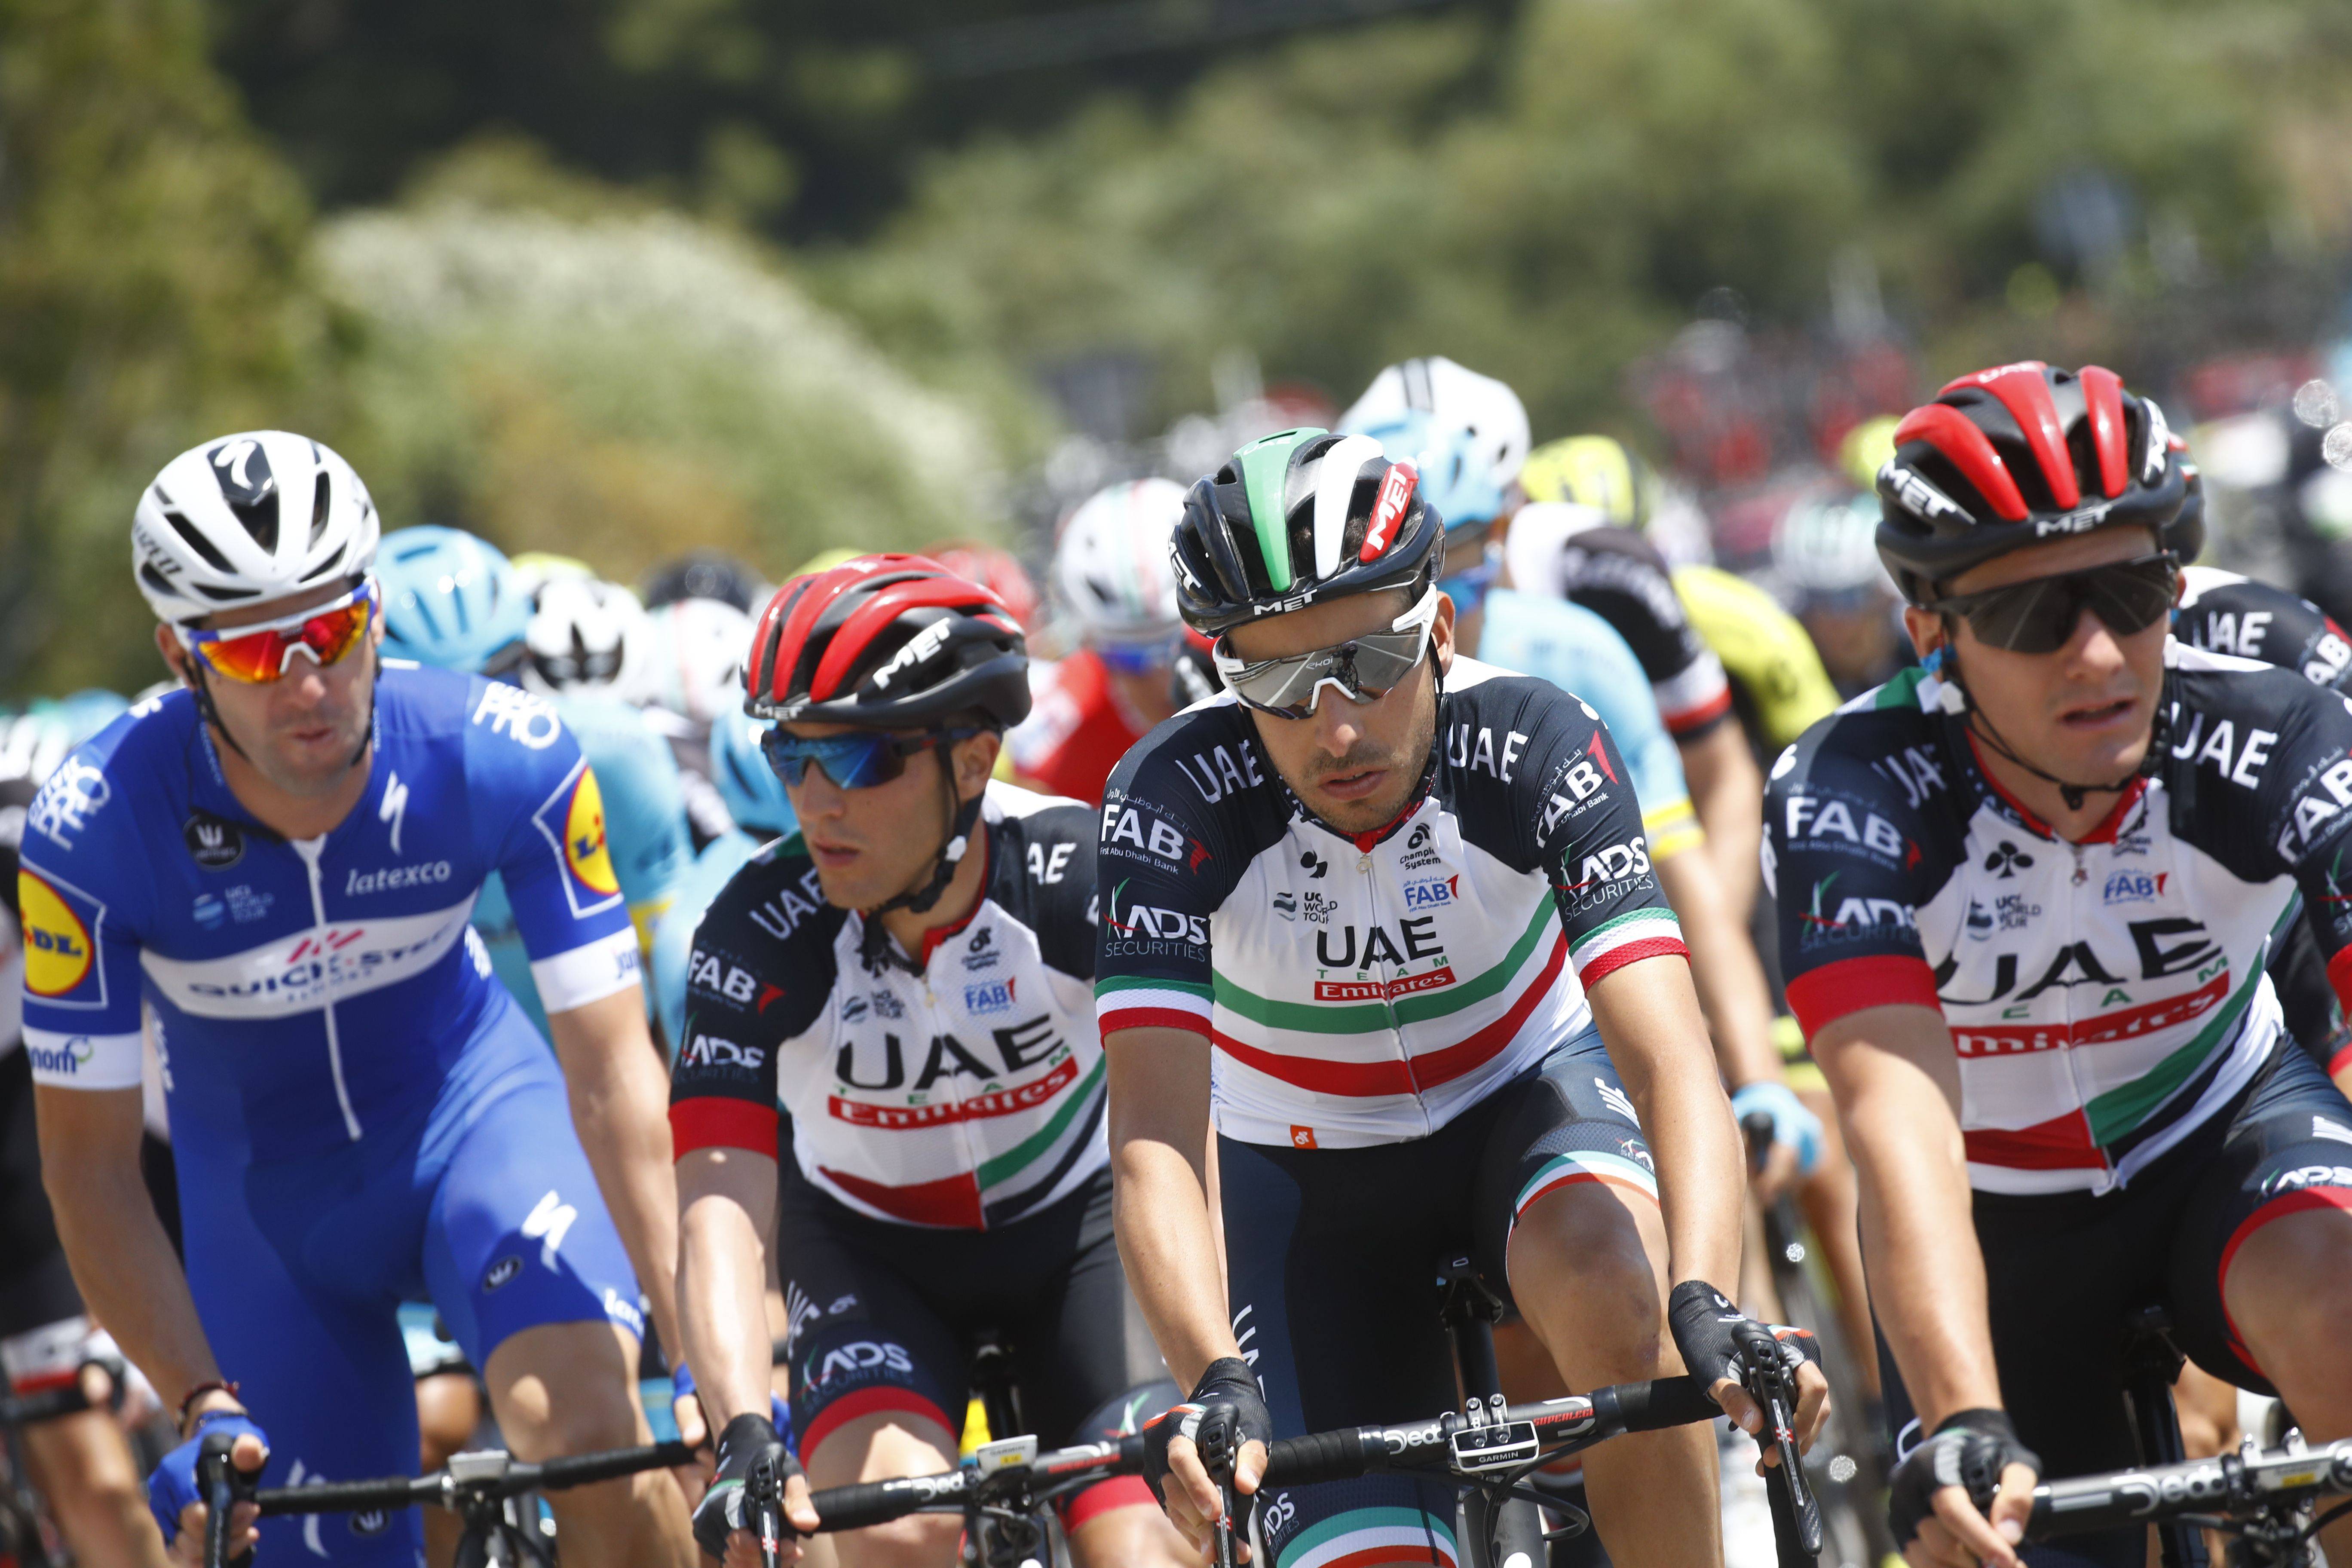 Giro d'italia, Roglic vince la cronometro ed e' maglia rosa, terzo Nibali